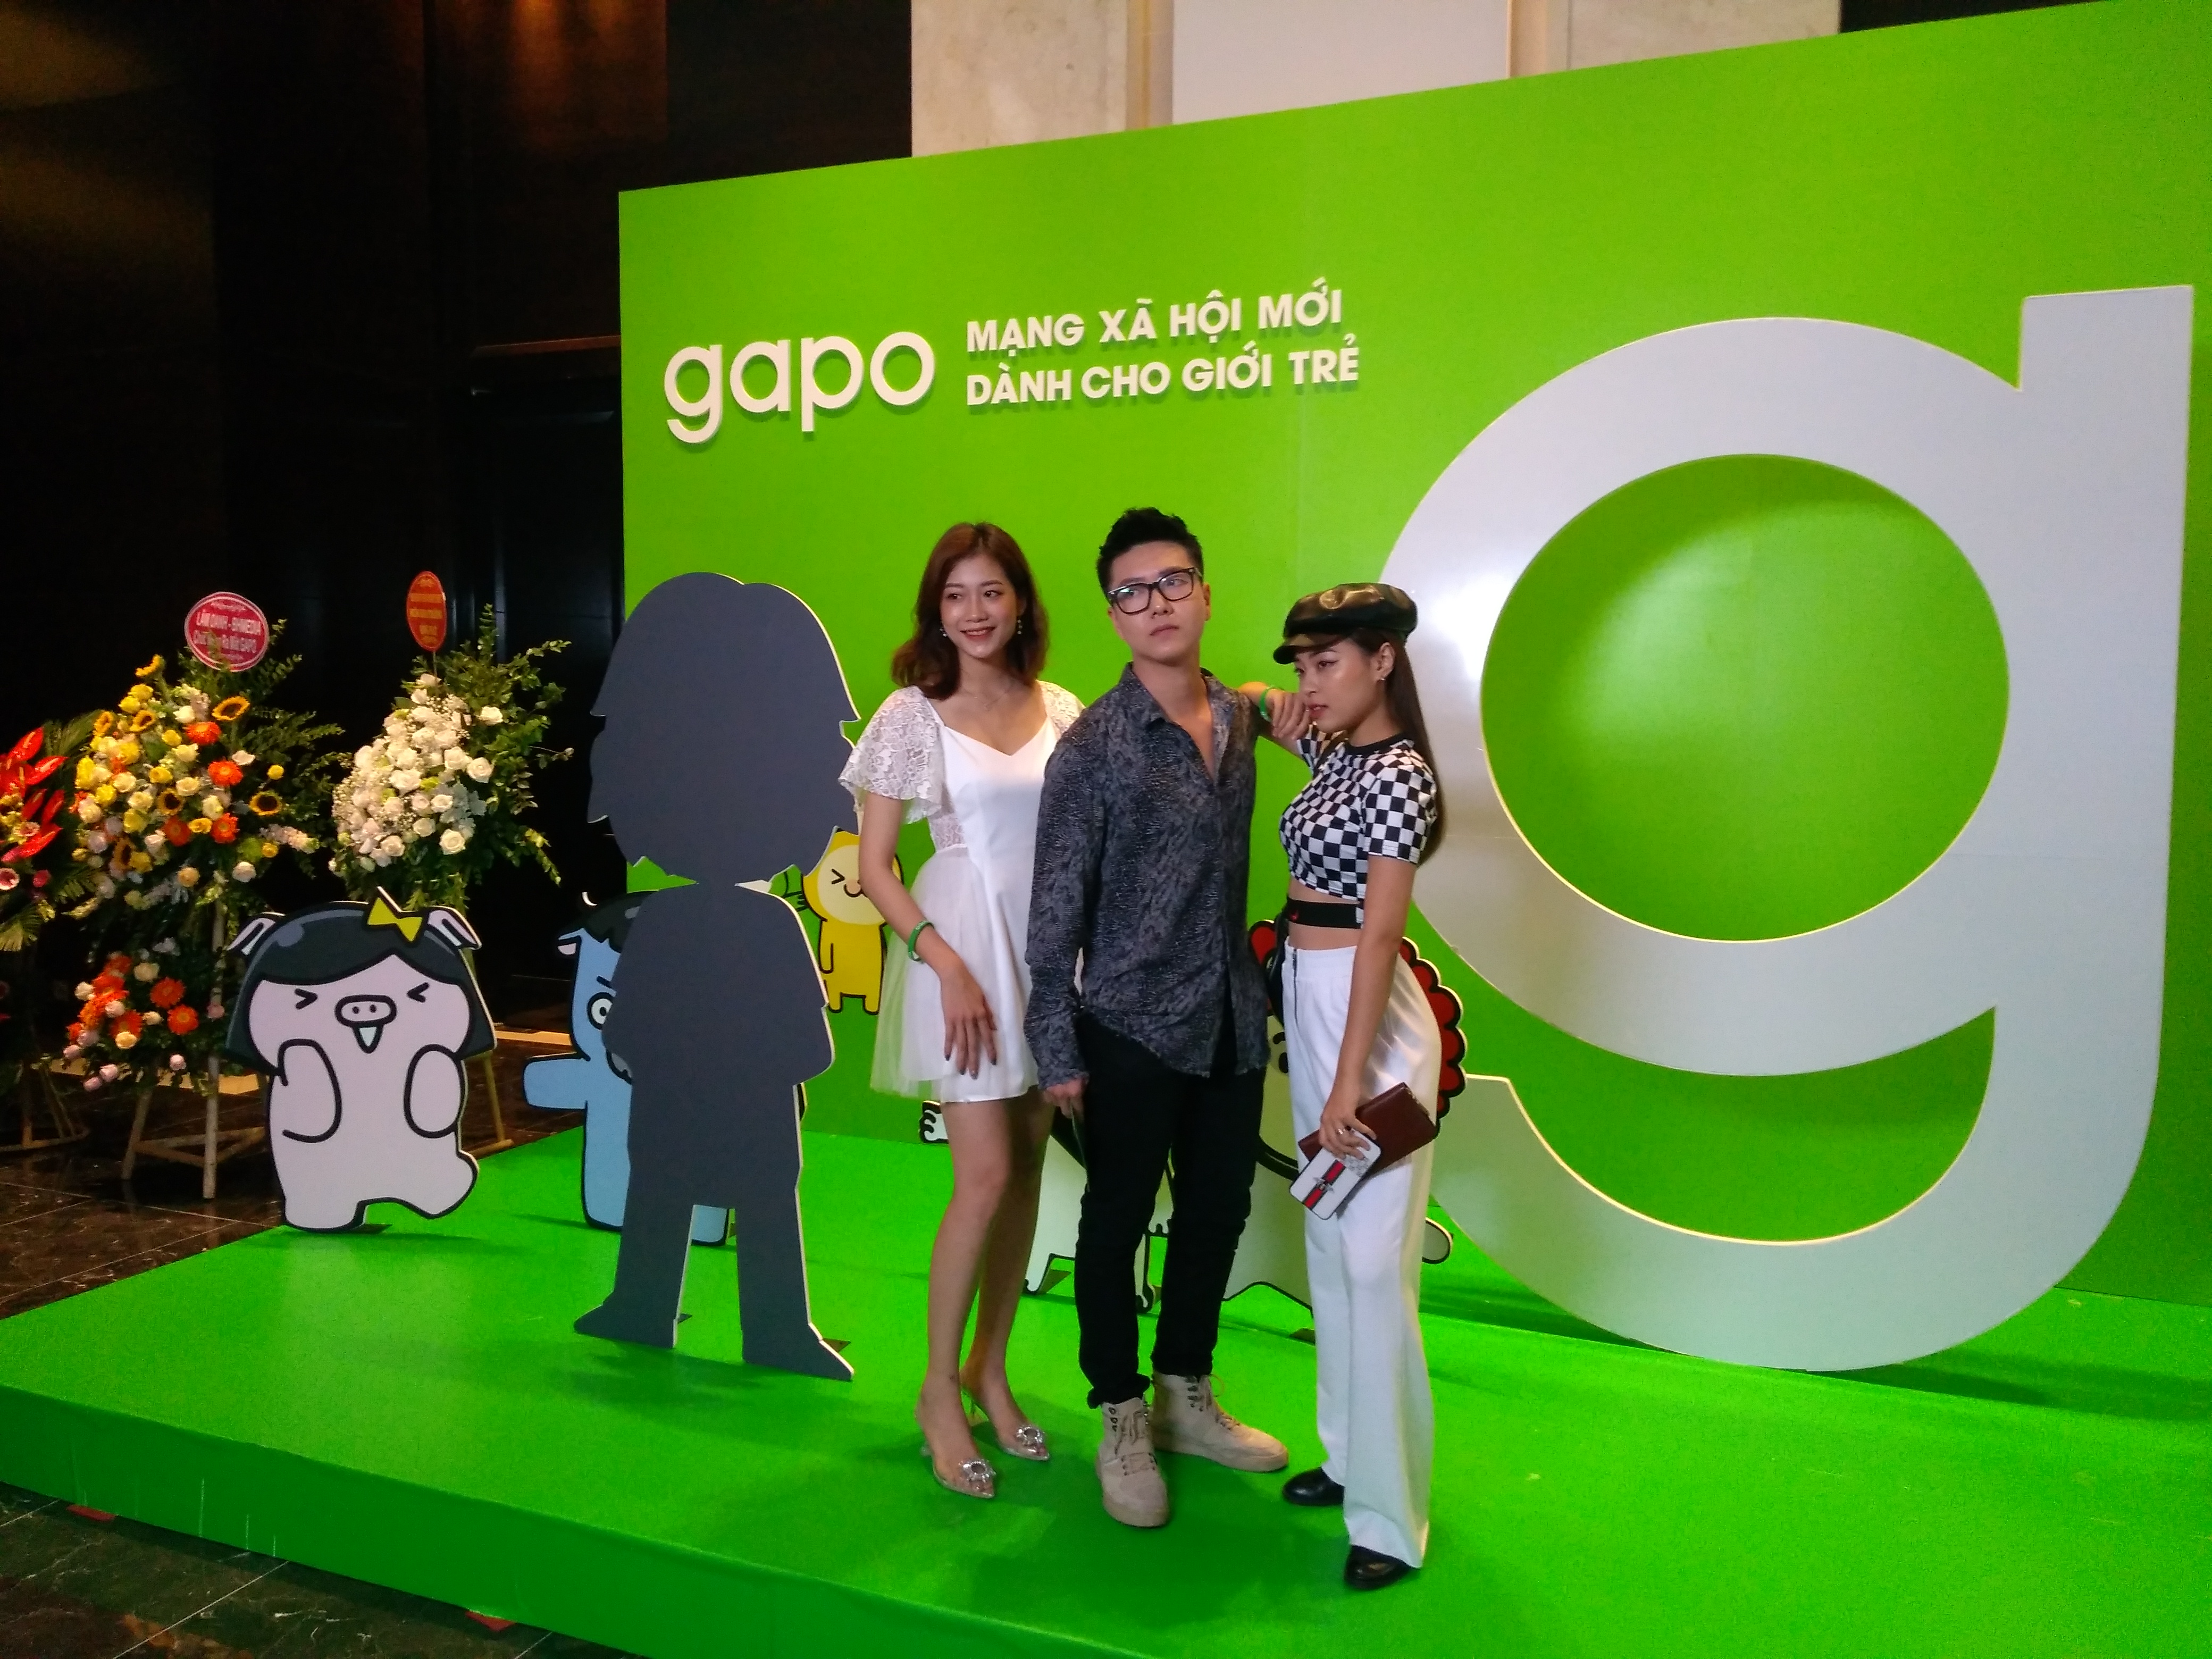 Mạng xã hội Gapo được kỳ vọng sẽ thu hút sự quan tâm của các bạn trẻ